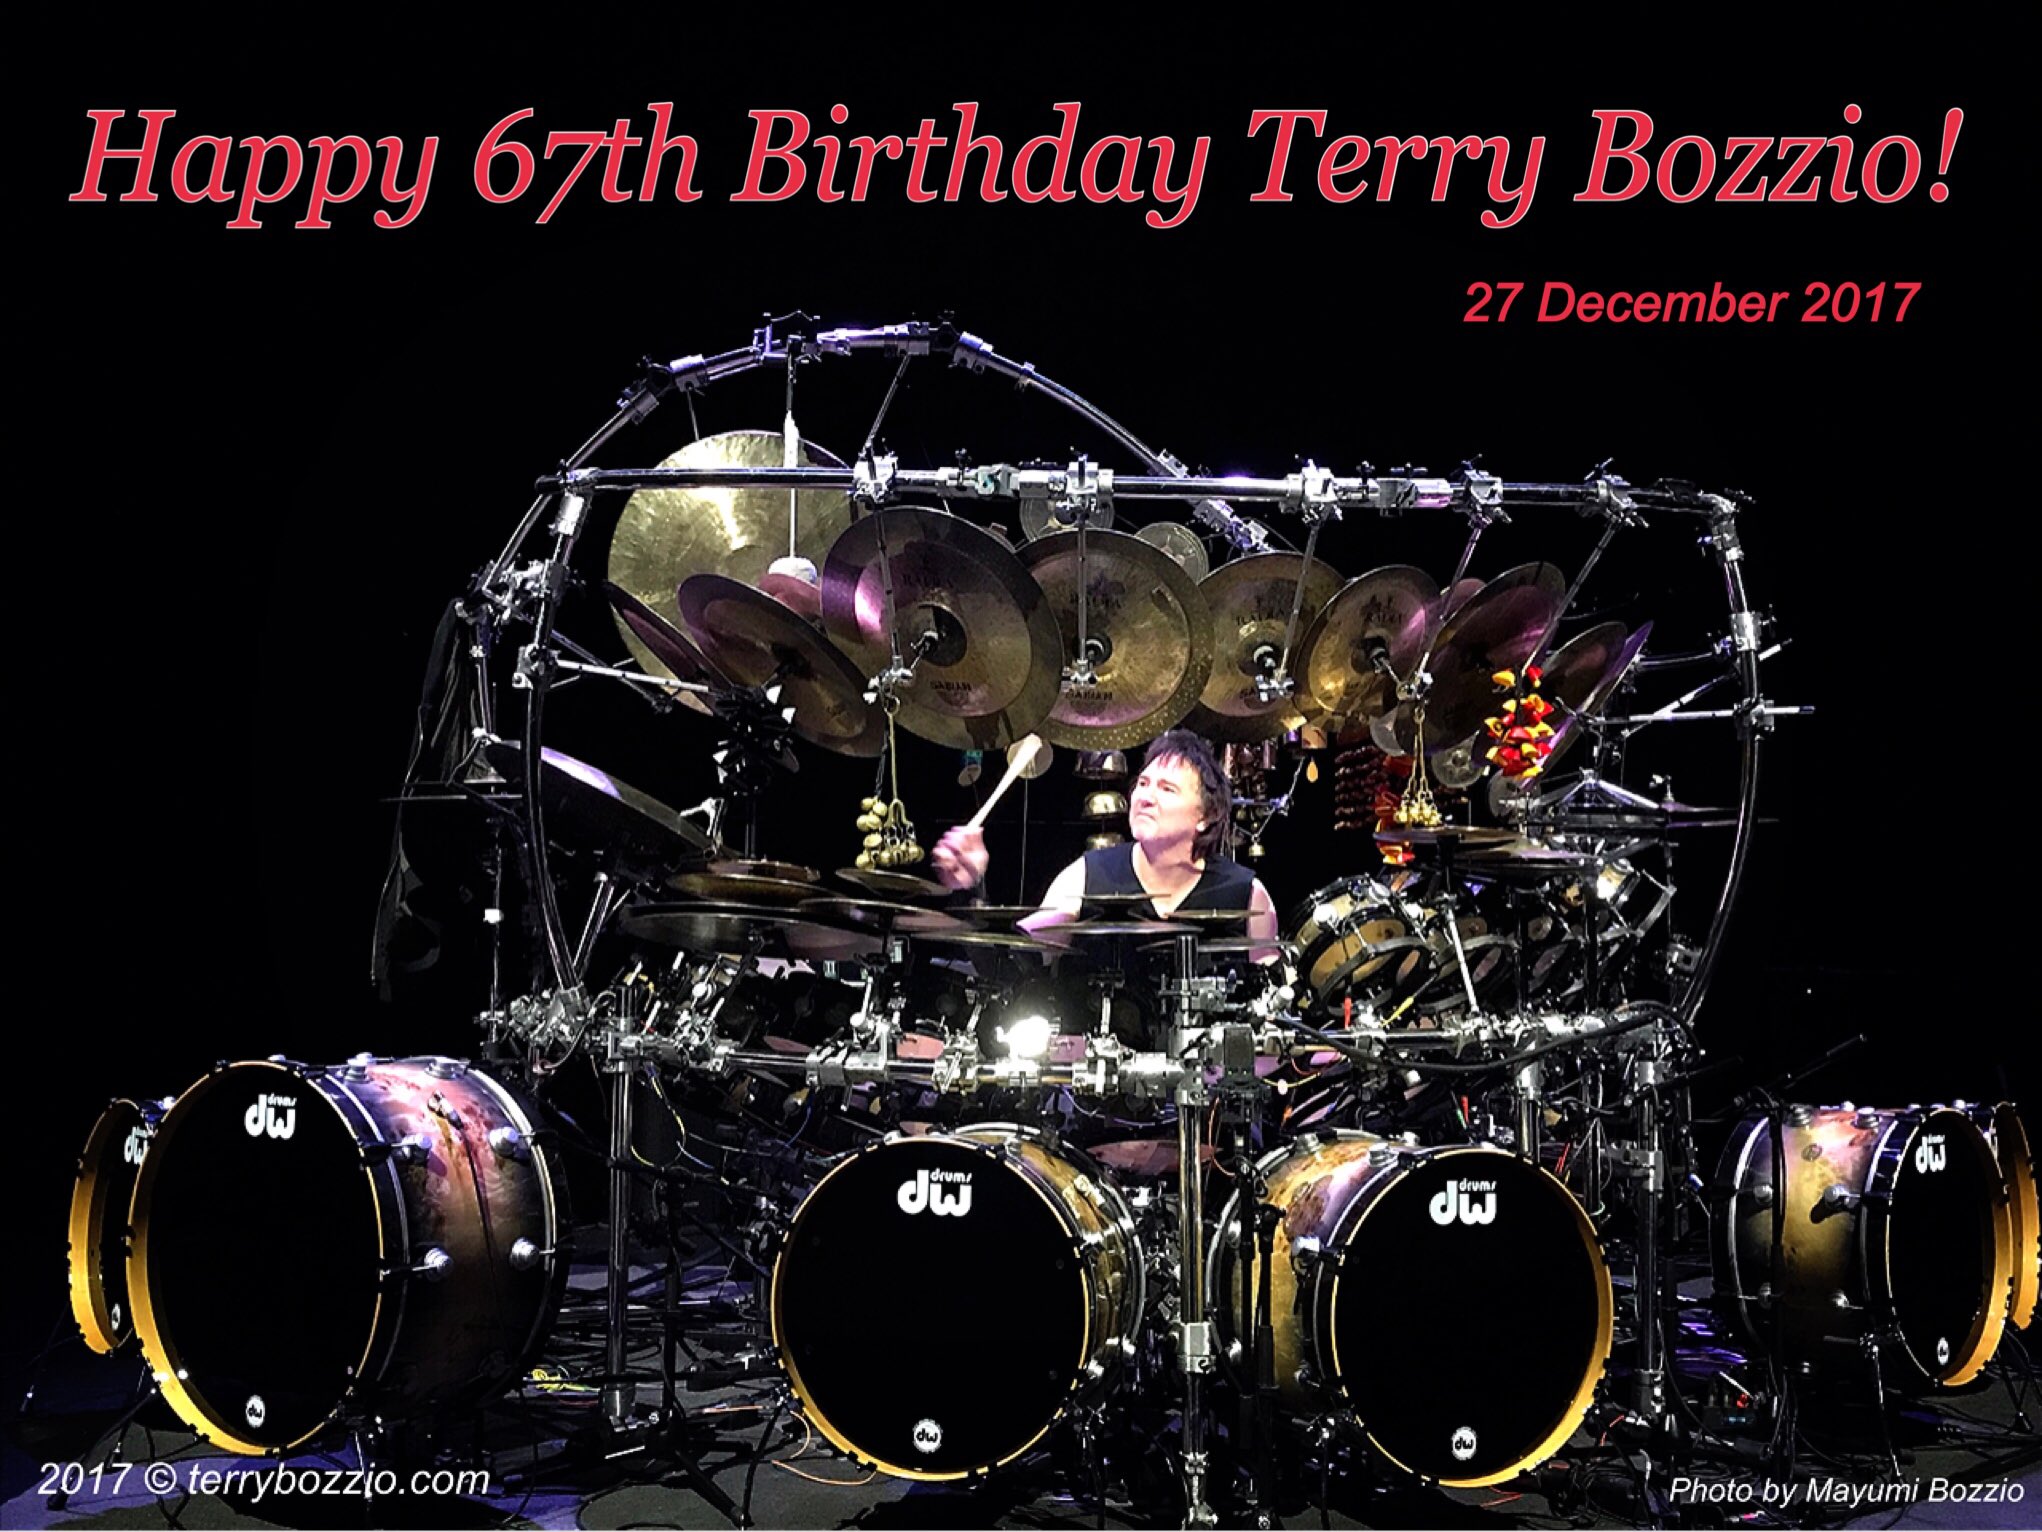 Happy 67th Birthday!
Terry Bozzio was born 27 December in 1950. 